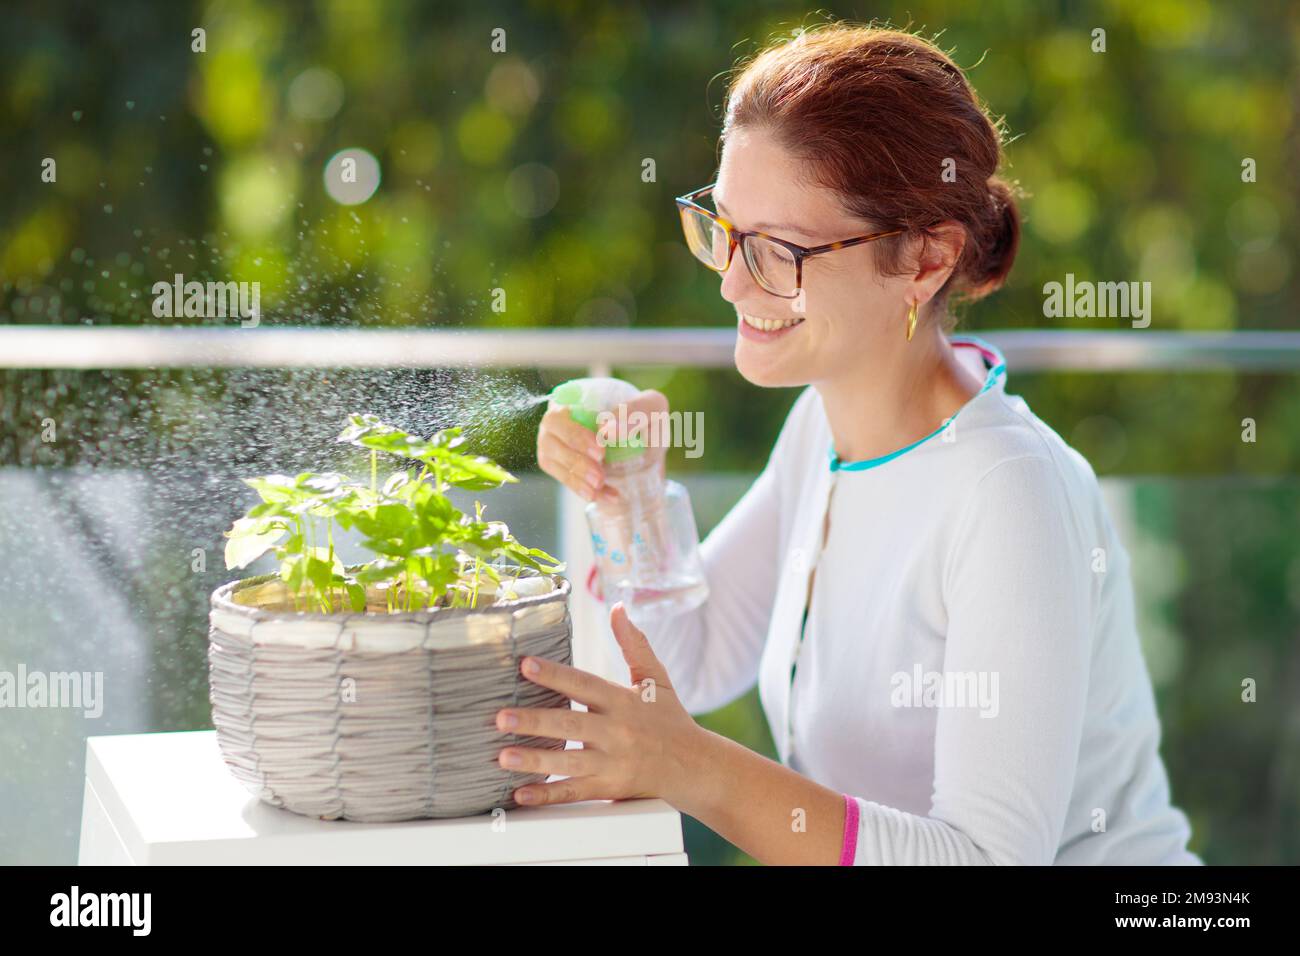 Eine Frau, die Balkonpflanzen bewässert. Kräutergarten auf der Terrasse. Junge Frau, die Wasser auf Topfkräuter spritzt. Basil in einem Topf auf der Apartmentterrasse. Stockfoto